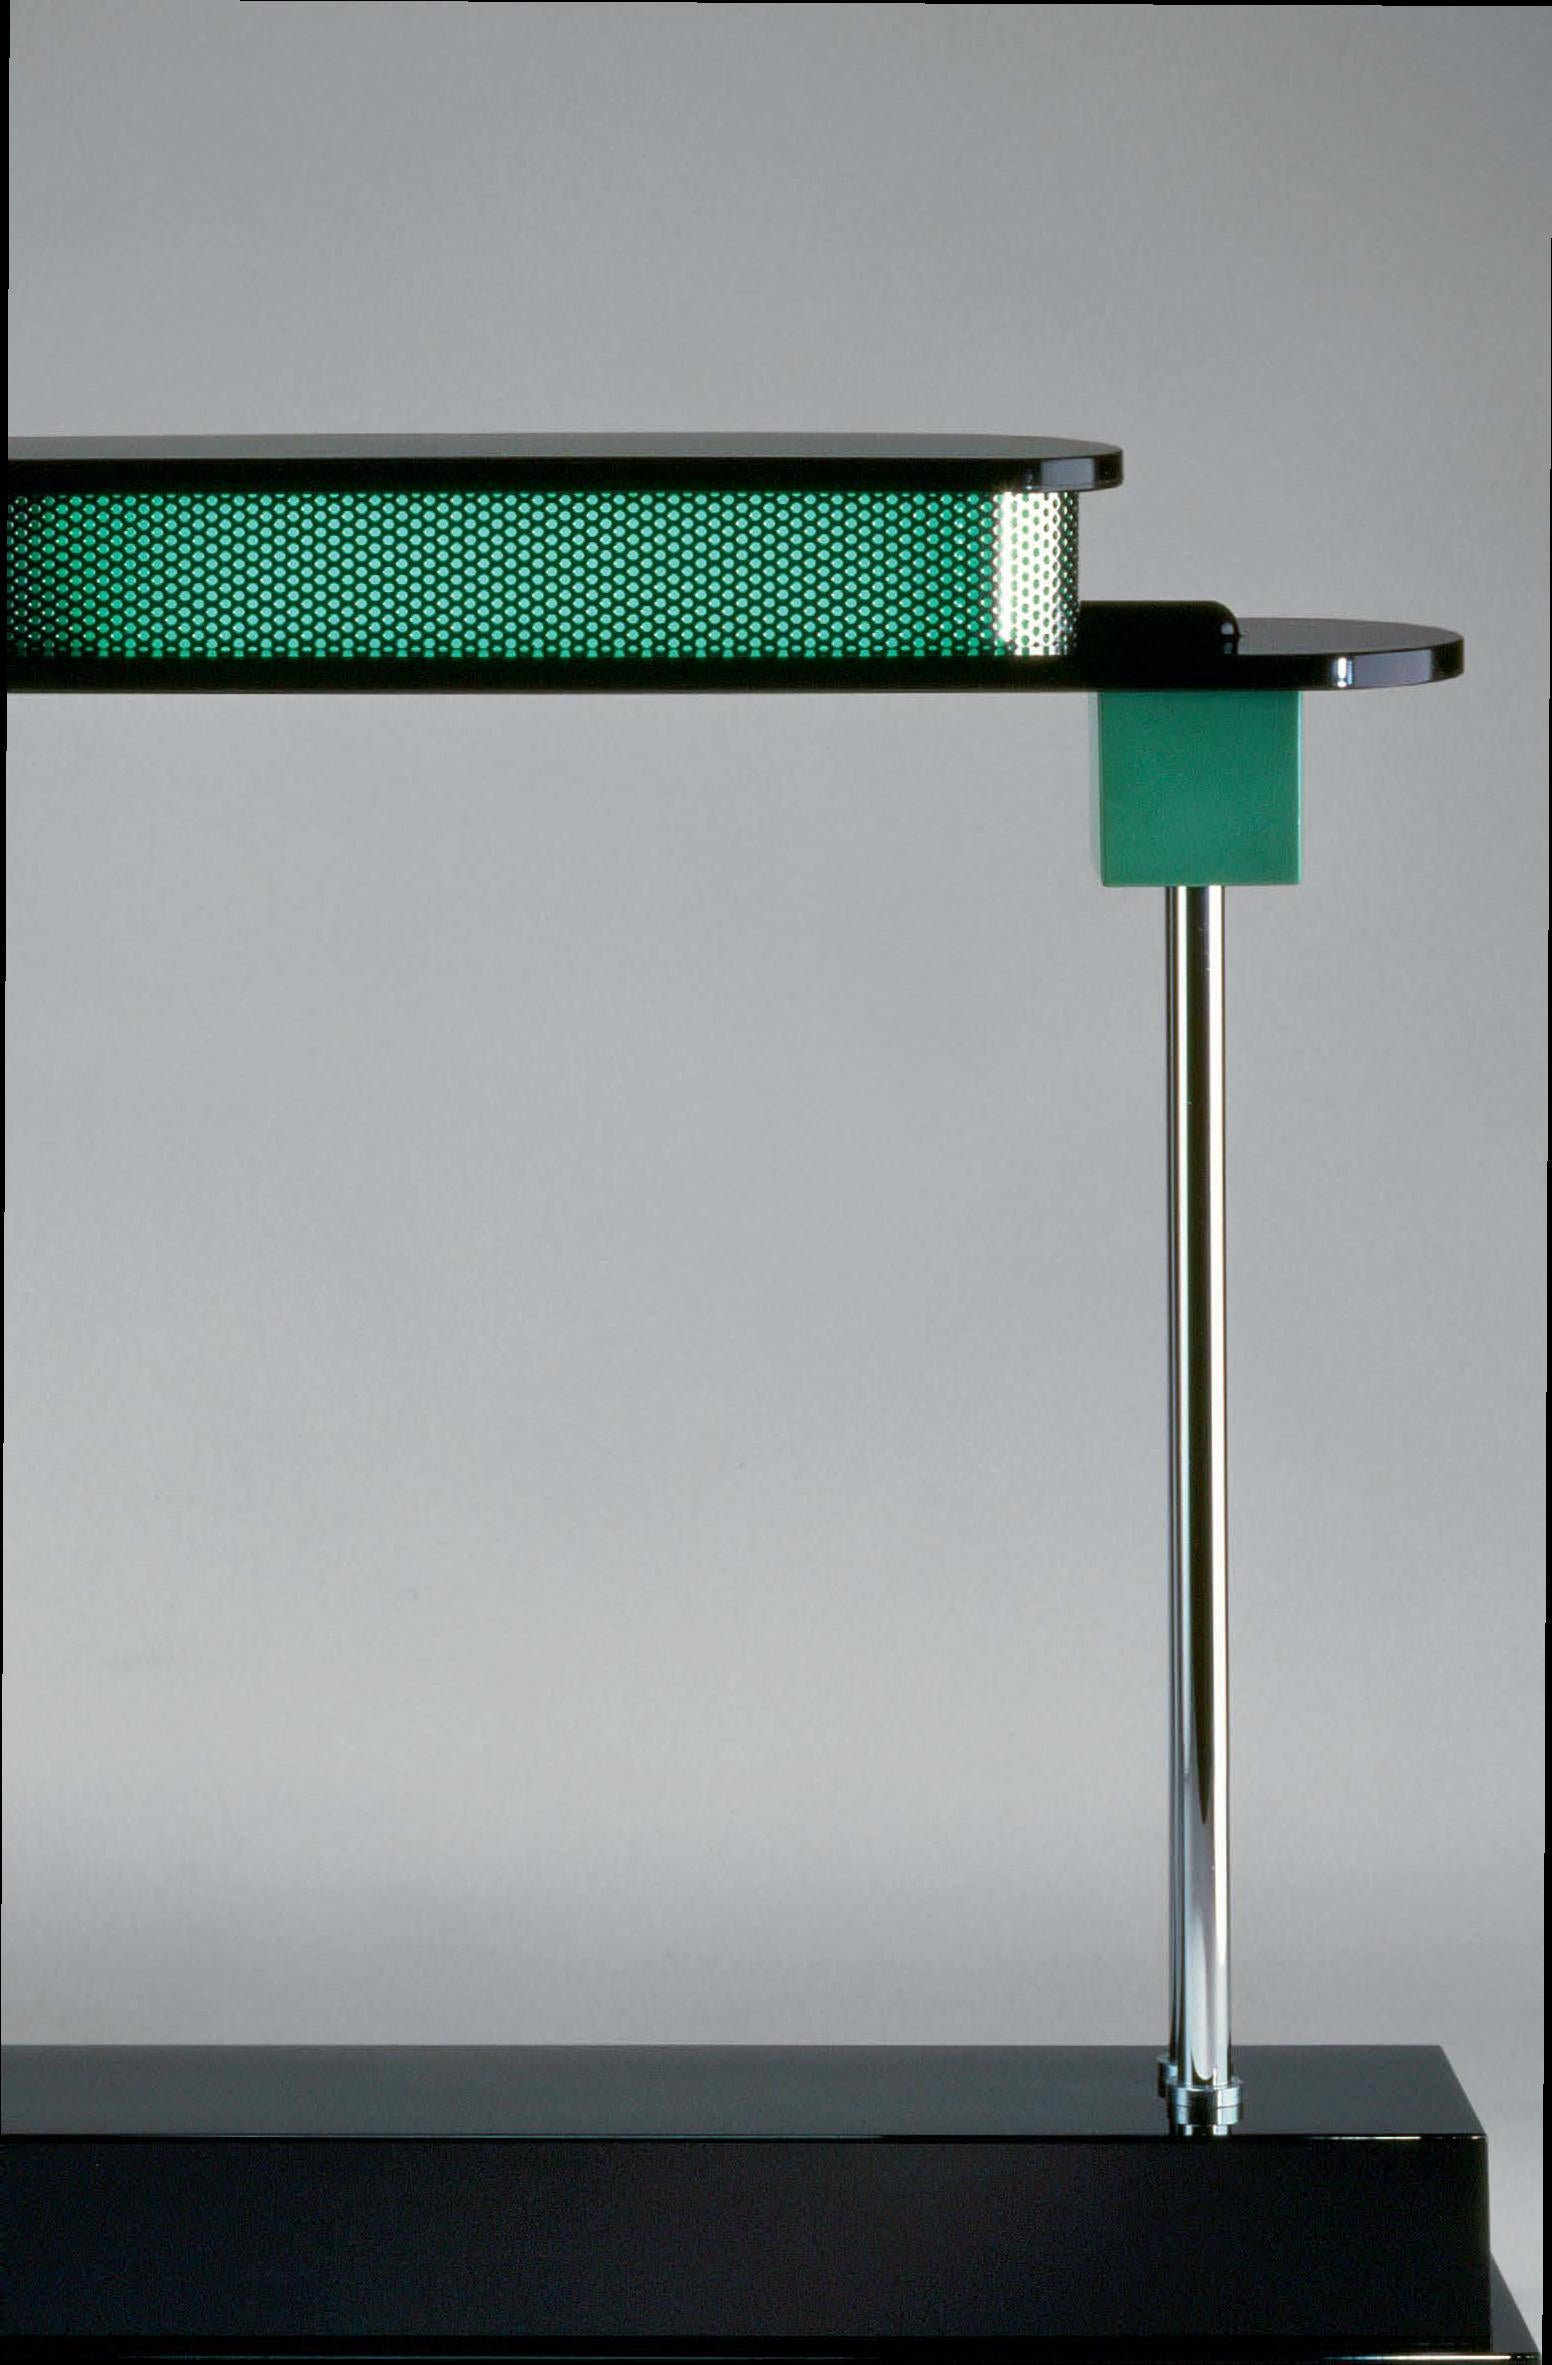 Artemide Pausania LED-Tischleuchte in Schwarz und Grün von Ettore Sottsass.
 
Der Pate des zeitgenössischen italienischen Designs, Ettore Sottsass, war der Meinung, dass Produkte ebenso sinnlich wie funktional sein sollten. Sottsass, der als